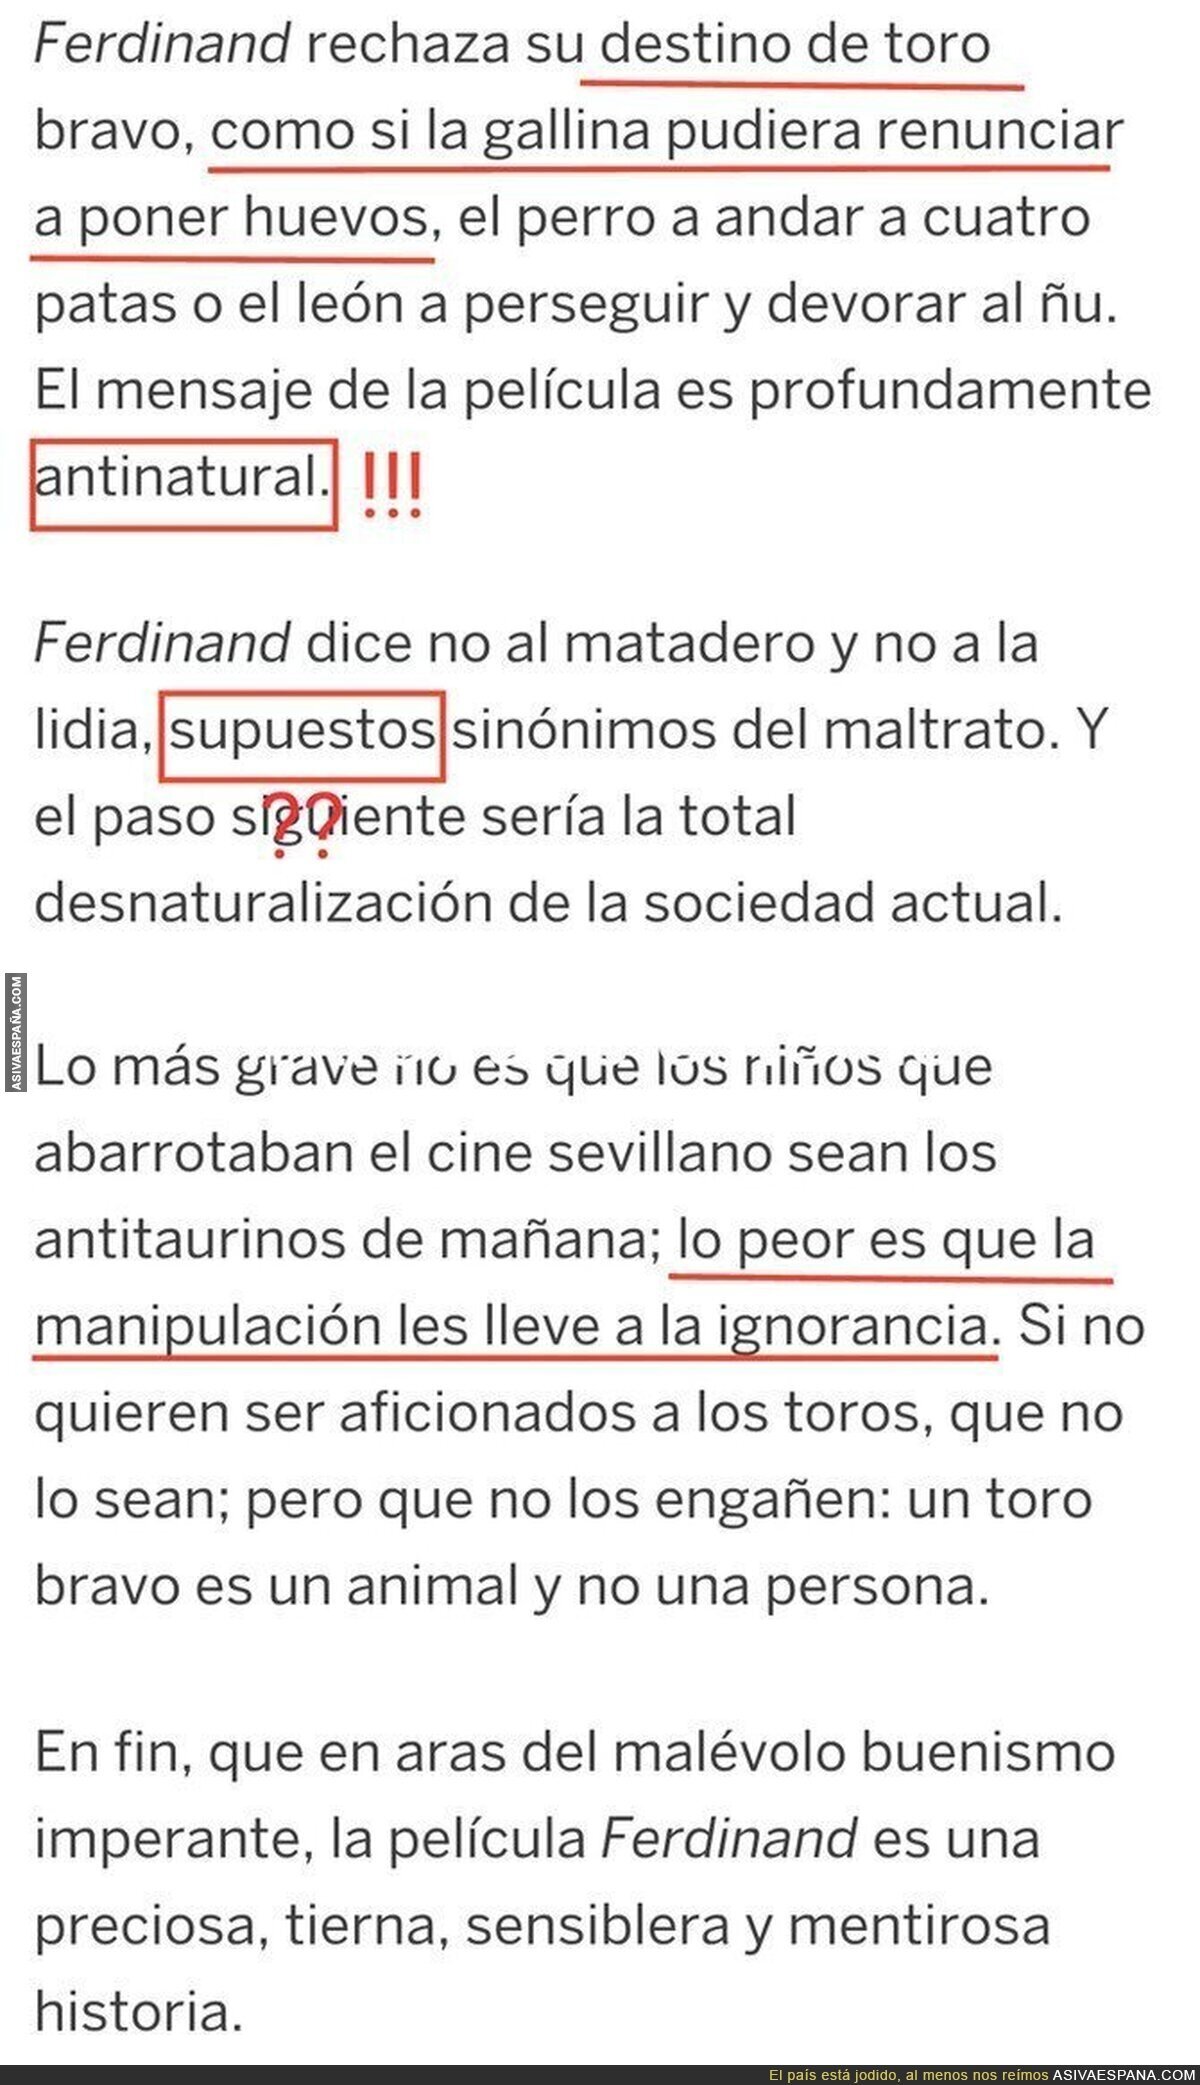 Crítica de Ferdinand en El País: "La tauromaquia es tan natural como poner huevos"